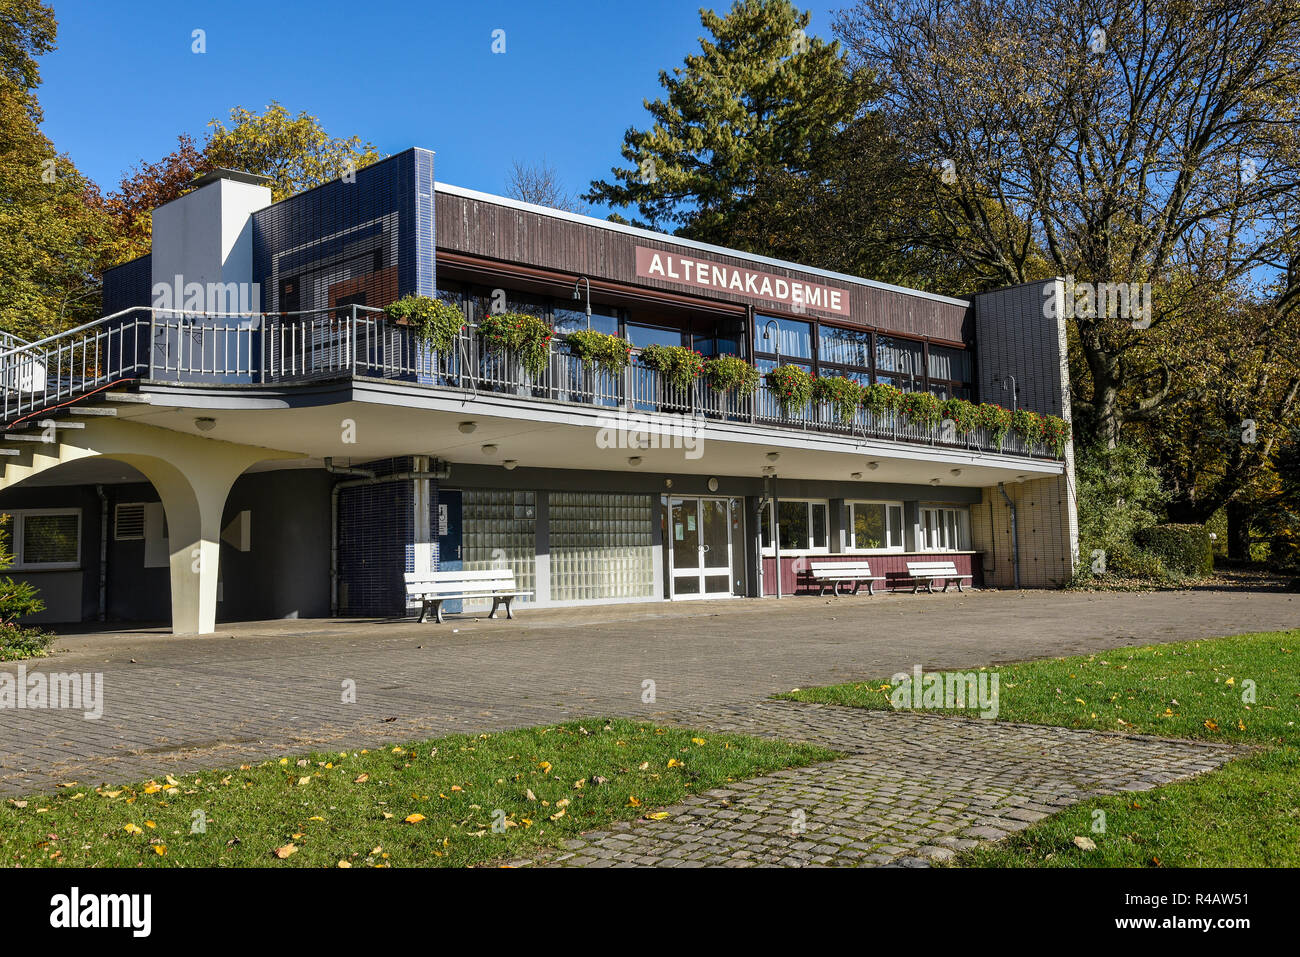 Anziani in accademia, istituzione scolastica, Westfalenpark, Dortmund, distretto della Ruhr, Nord Reno-Westfalia, Germania Foto Stock